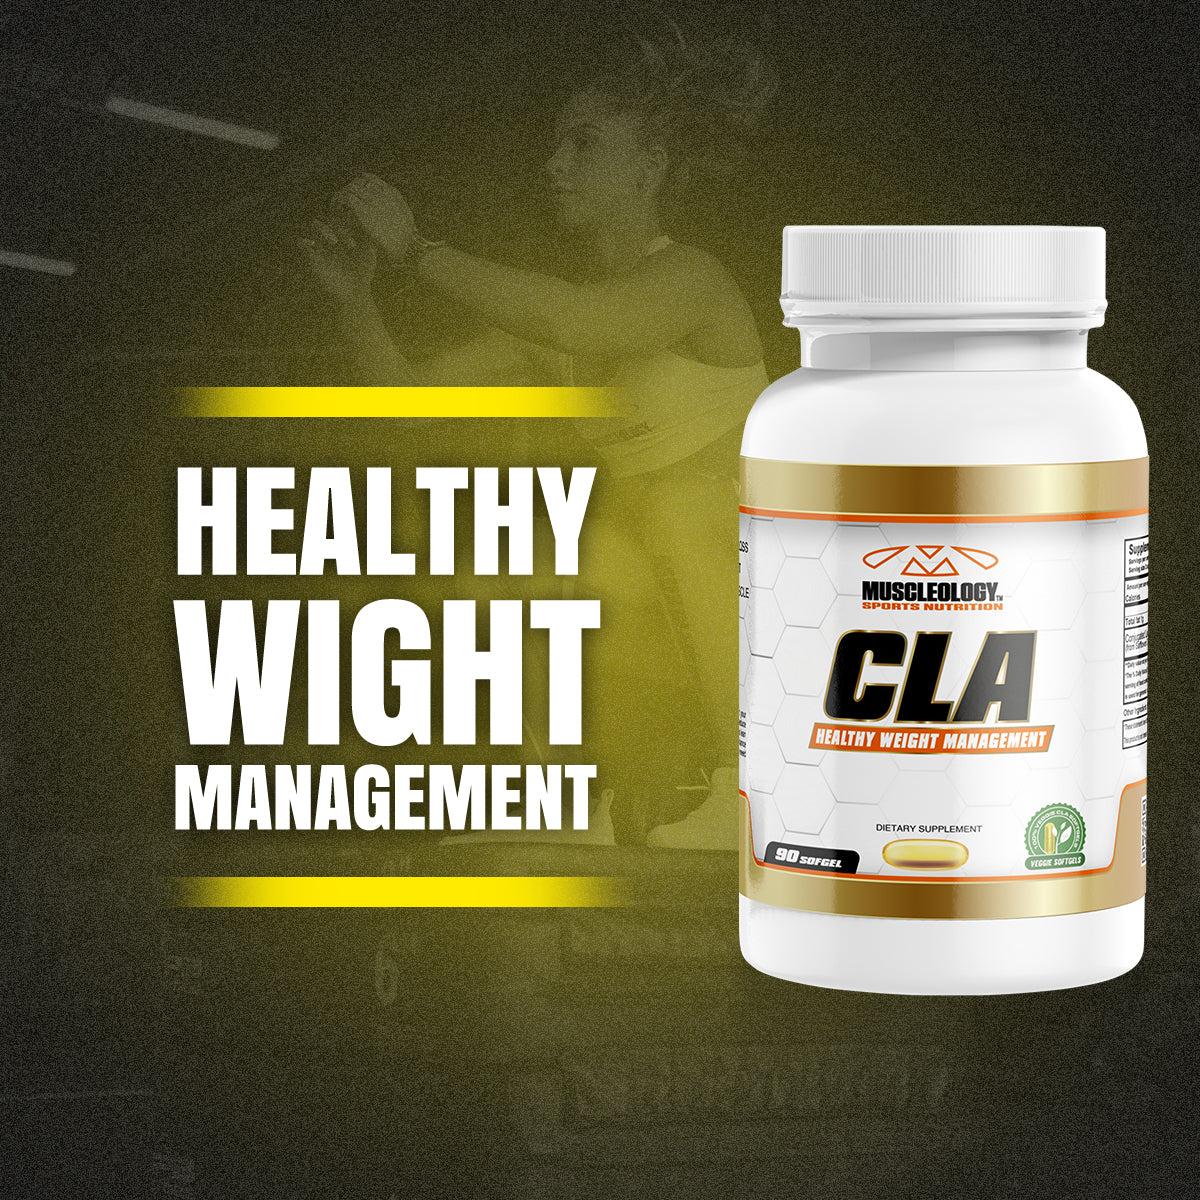 Veggie CLA - Weight Management